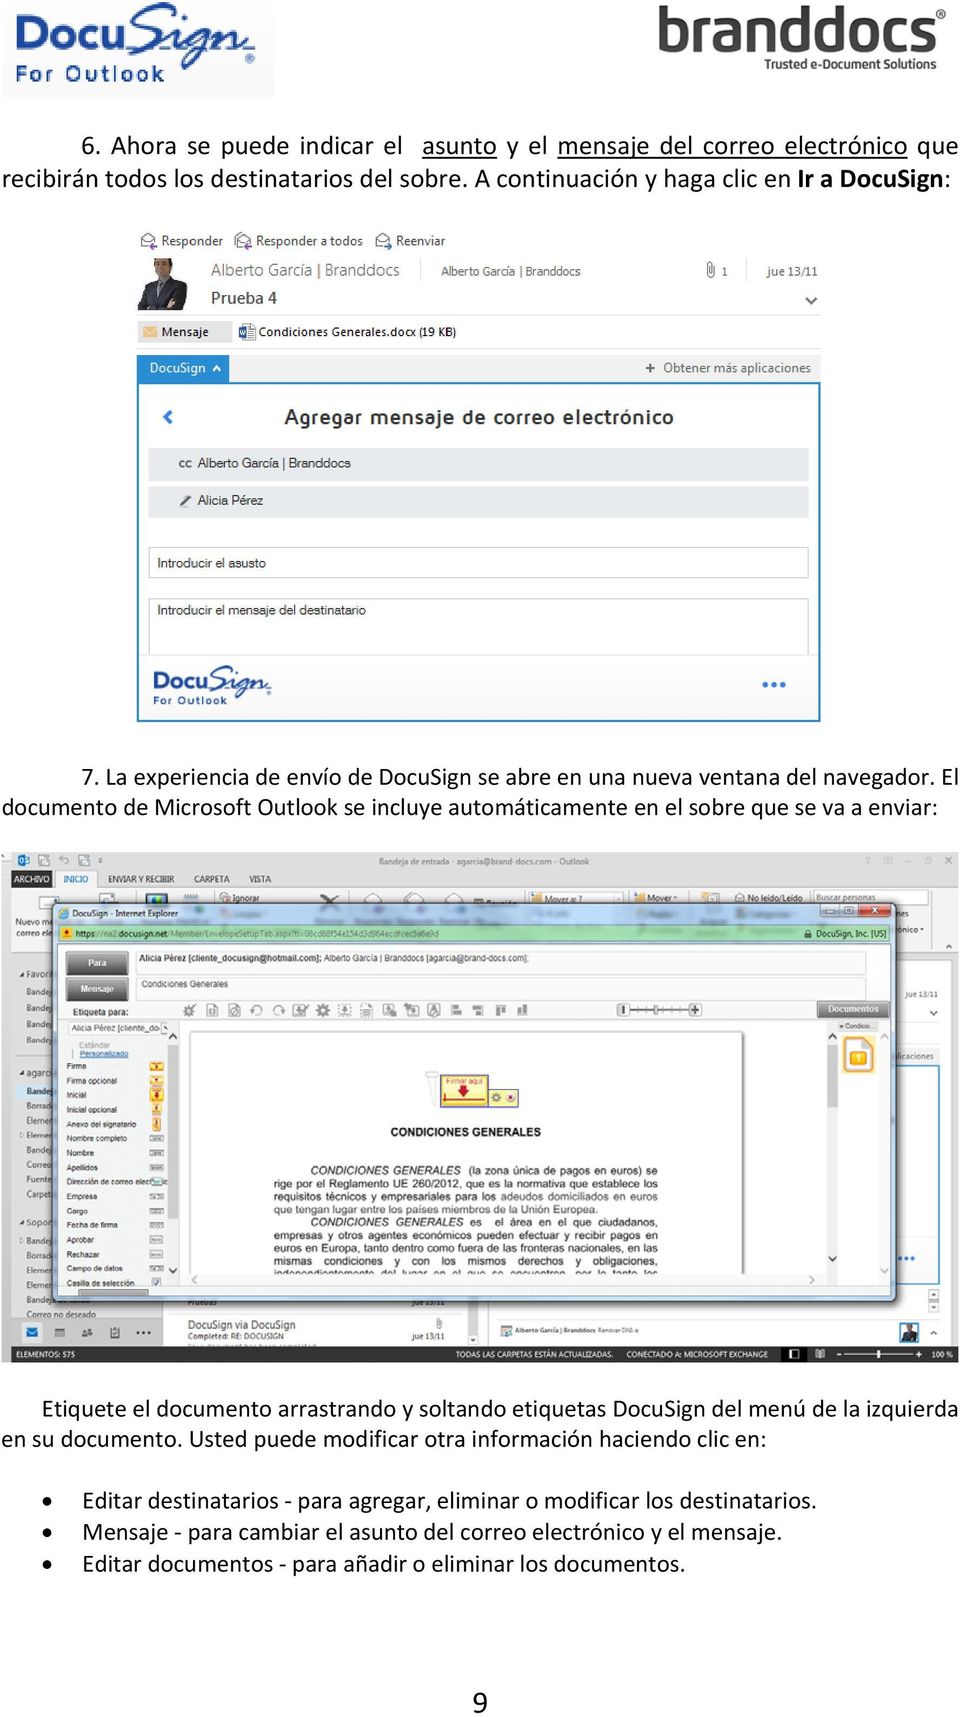 El documento de Microsoft Outlook se incluye automáticamente en el sobre que se va a enviar: Etiquete el documento arrastrando y soltando etiquetas DocuSign del menú de la